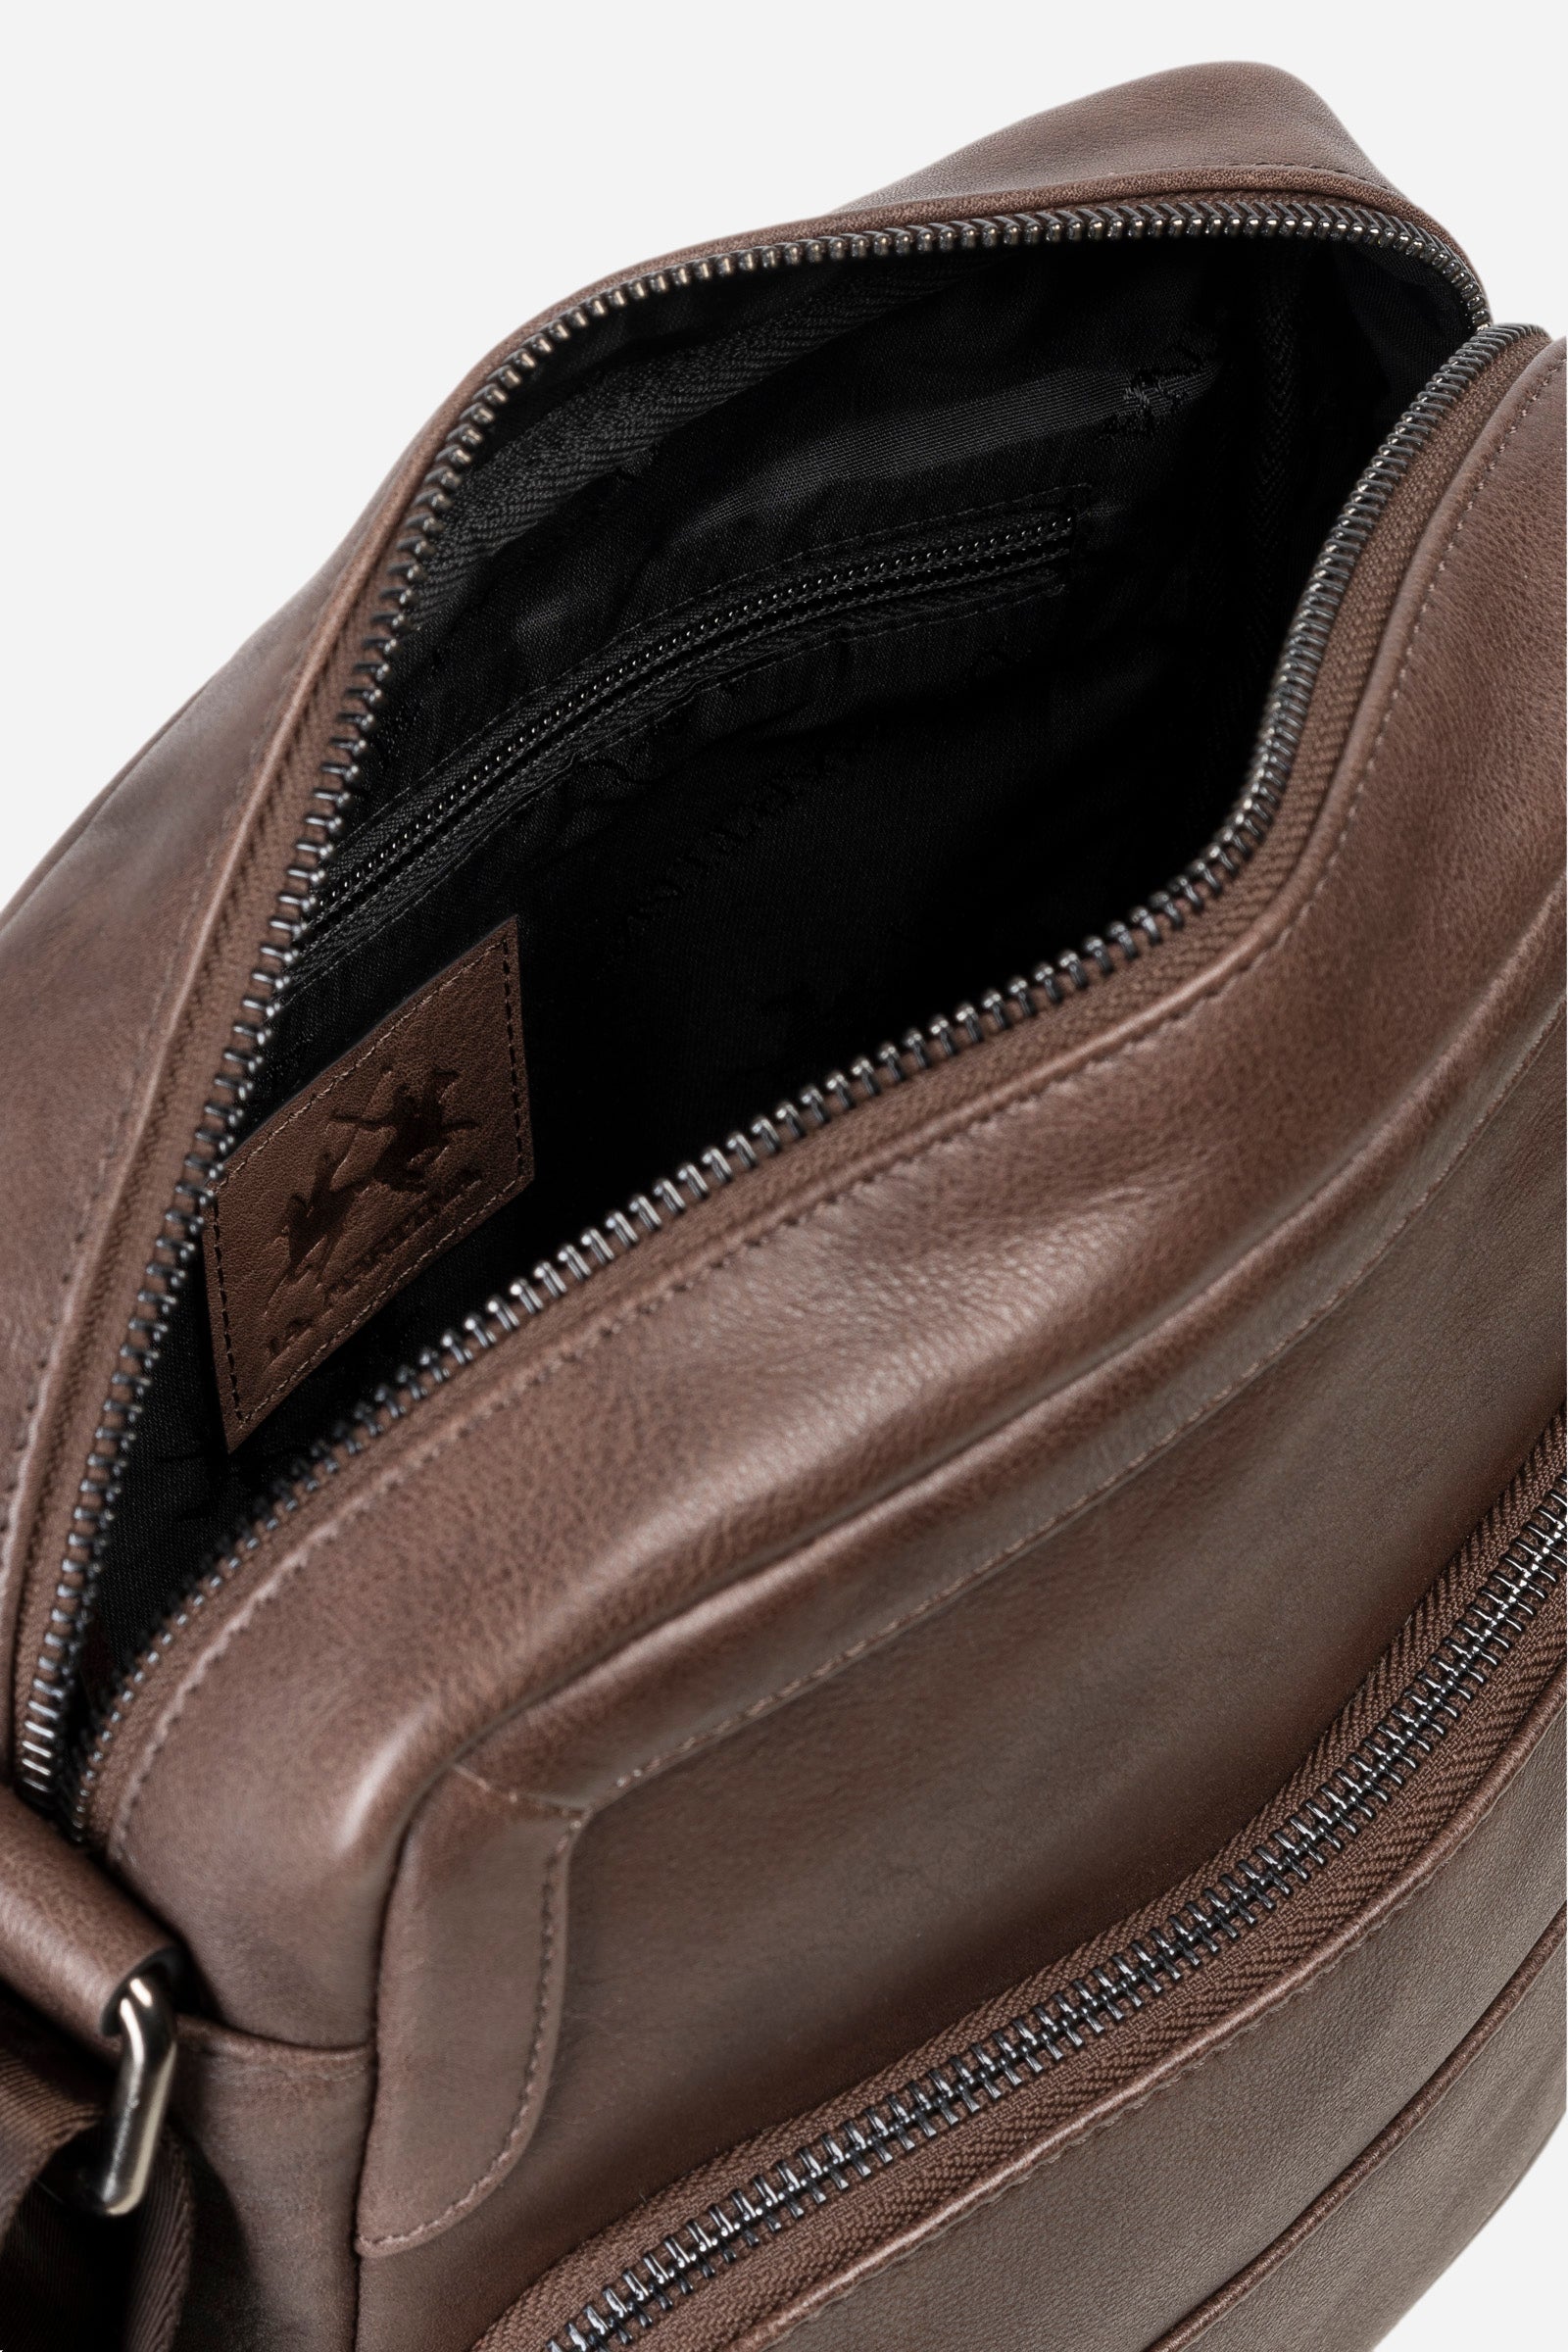 Men's leather bodybag - Miguel